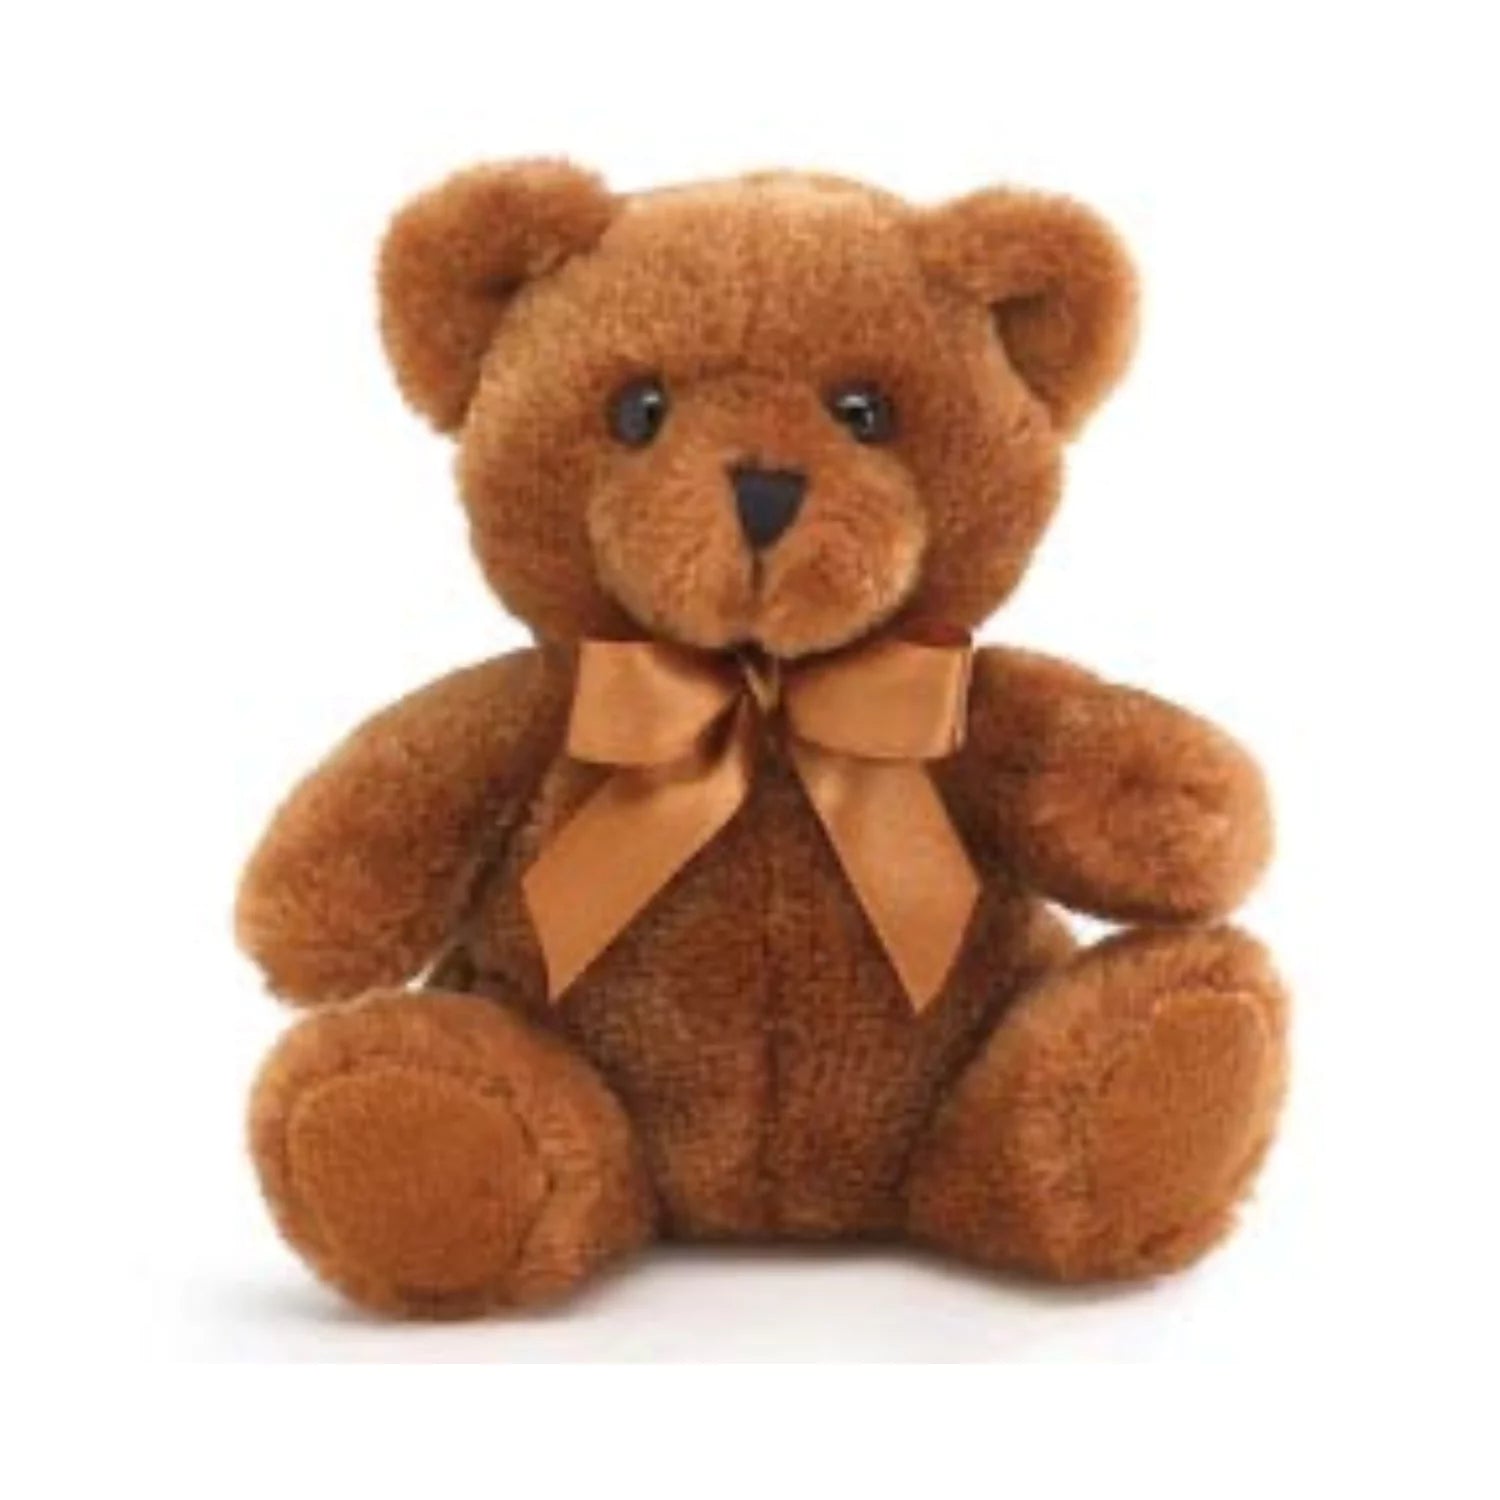 Stuffed Animal Add-On 6.5" Brown Bear